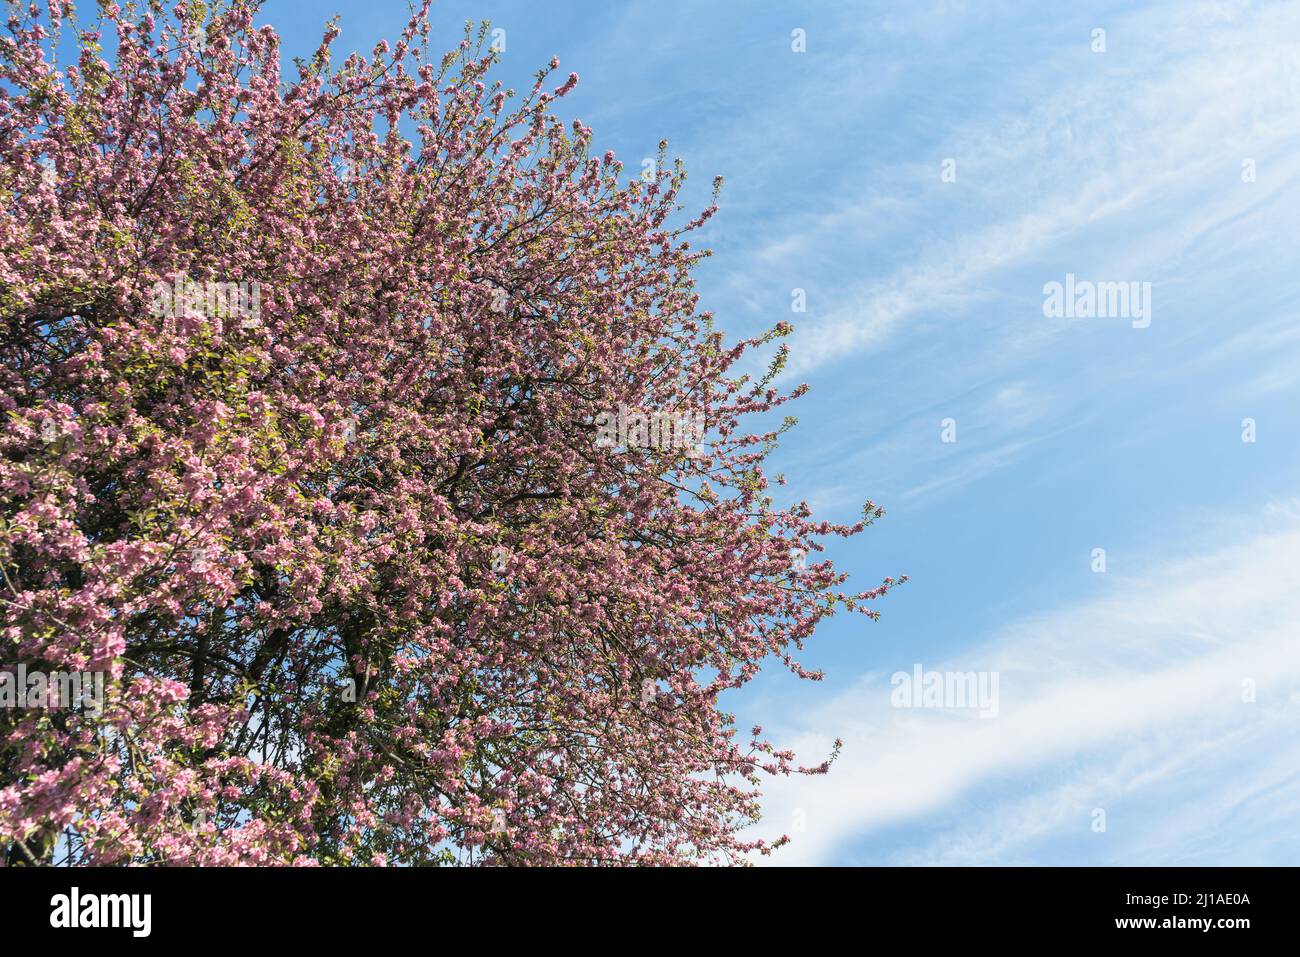 Malus niedzwetzkyana, or Niedzwetzky's apple tree in full bloom against blue skies atspringtime Stock Photo